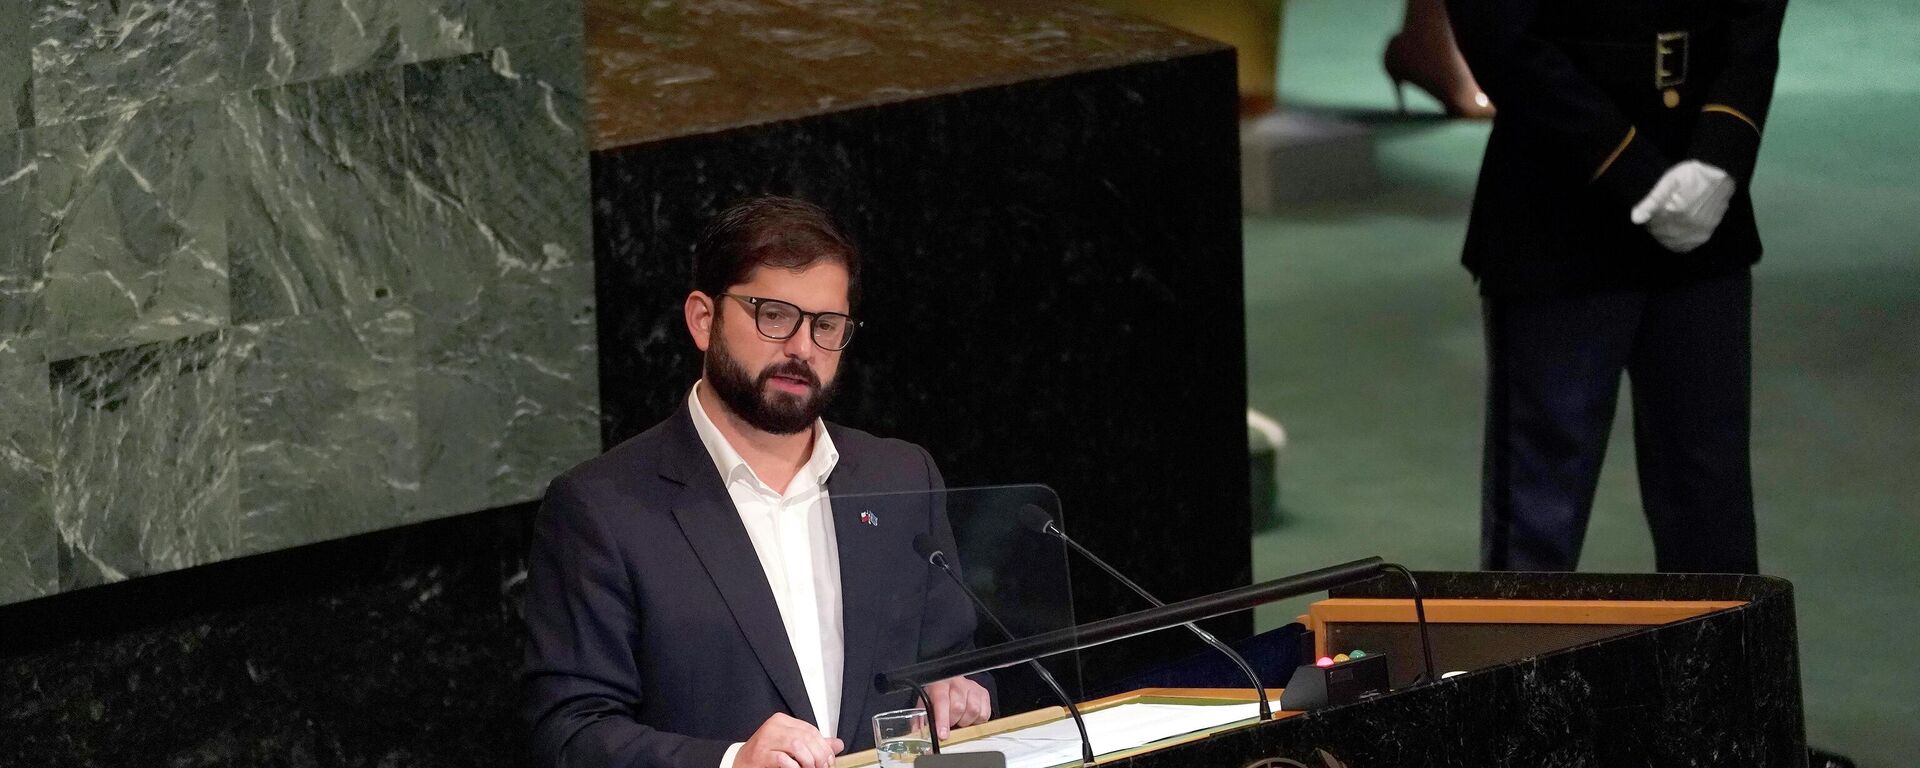 El presidente de Chile, Gabriel Boric, interviene en la 77 sesión de la Asamblea General de Naciones Unidas - Sputnik Mundo, 1920, 20.09.2022